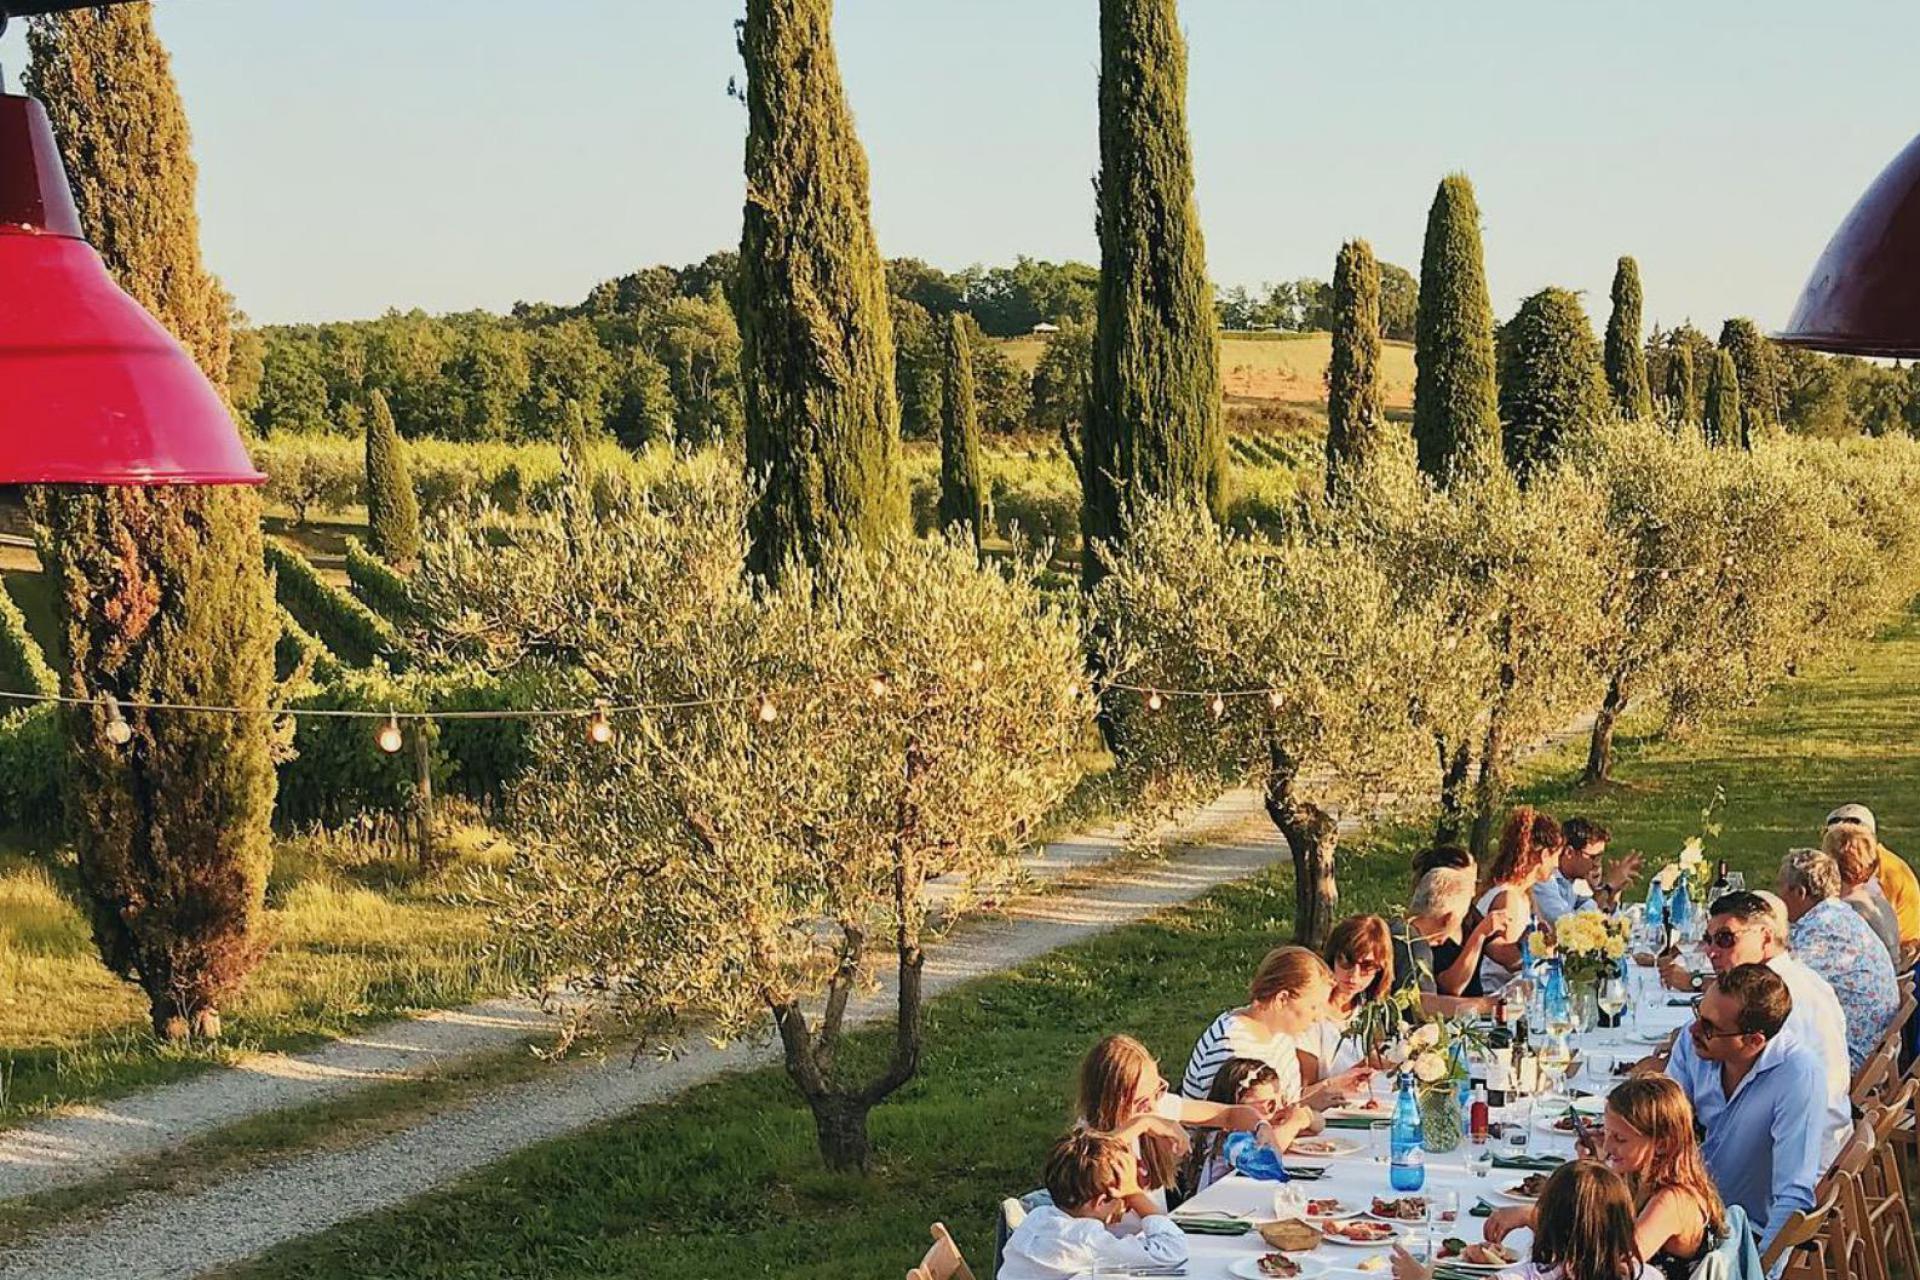 Agriturismo Tuscany Winery and luxury agriturismo near Pisa